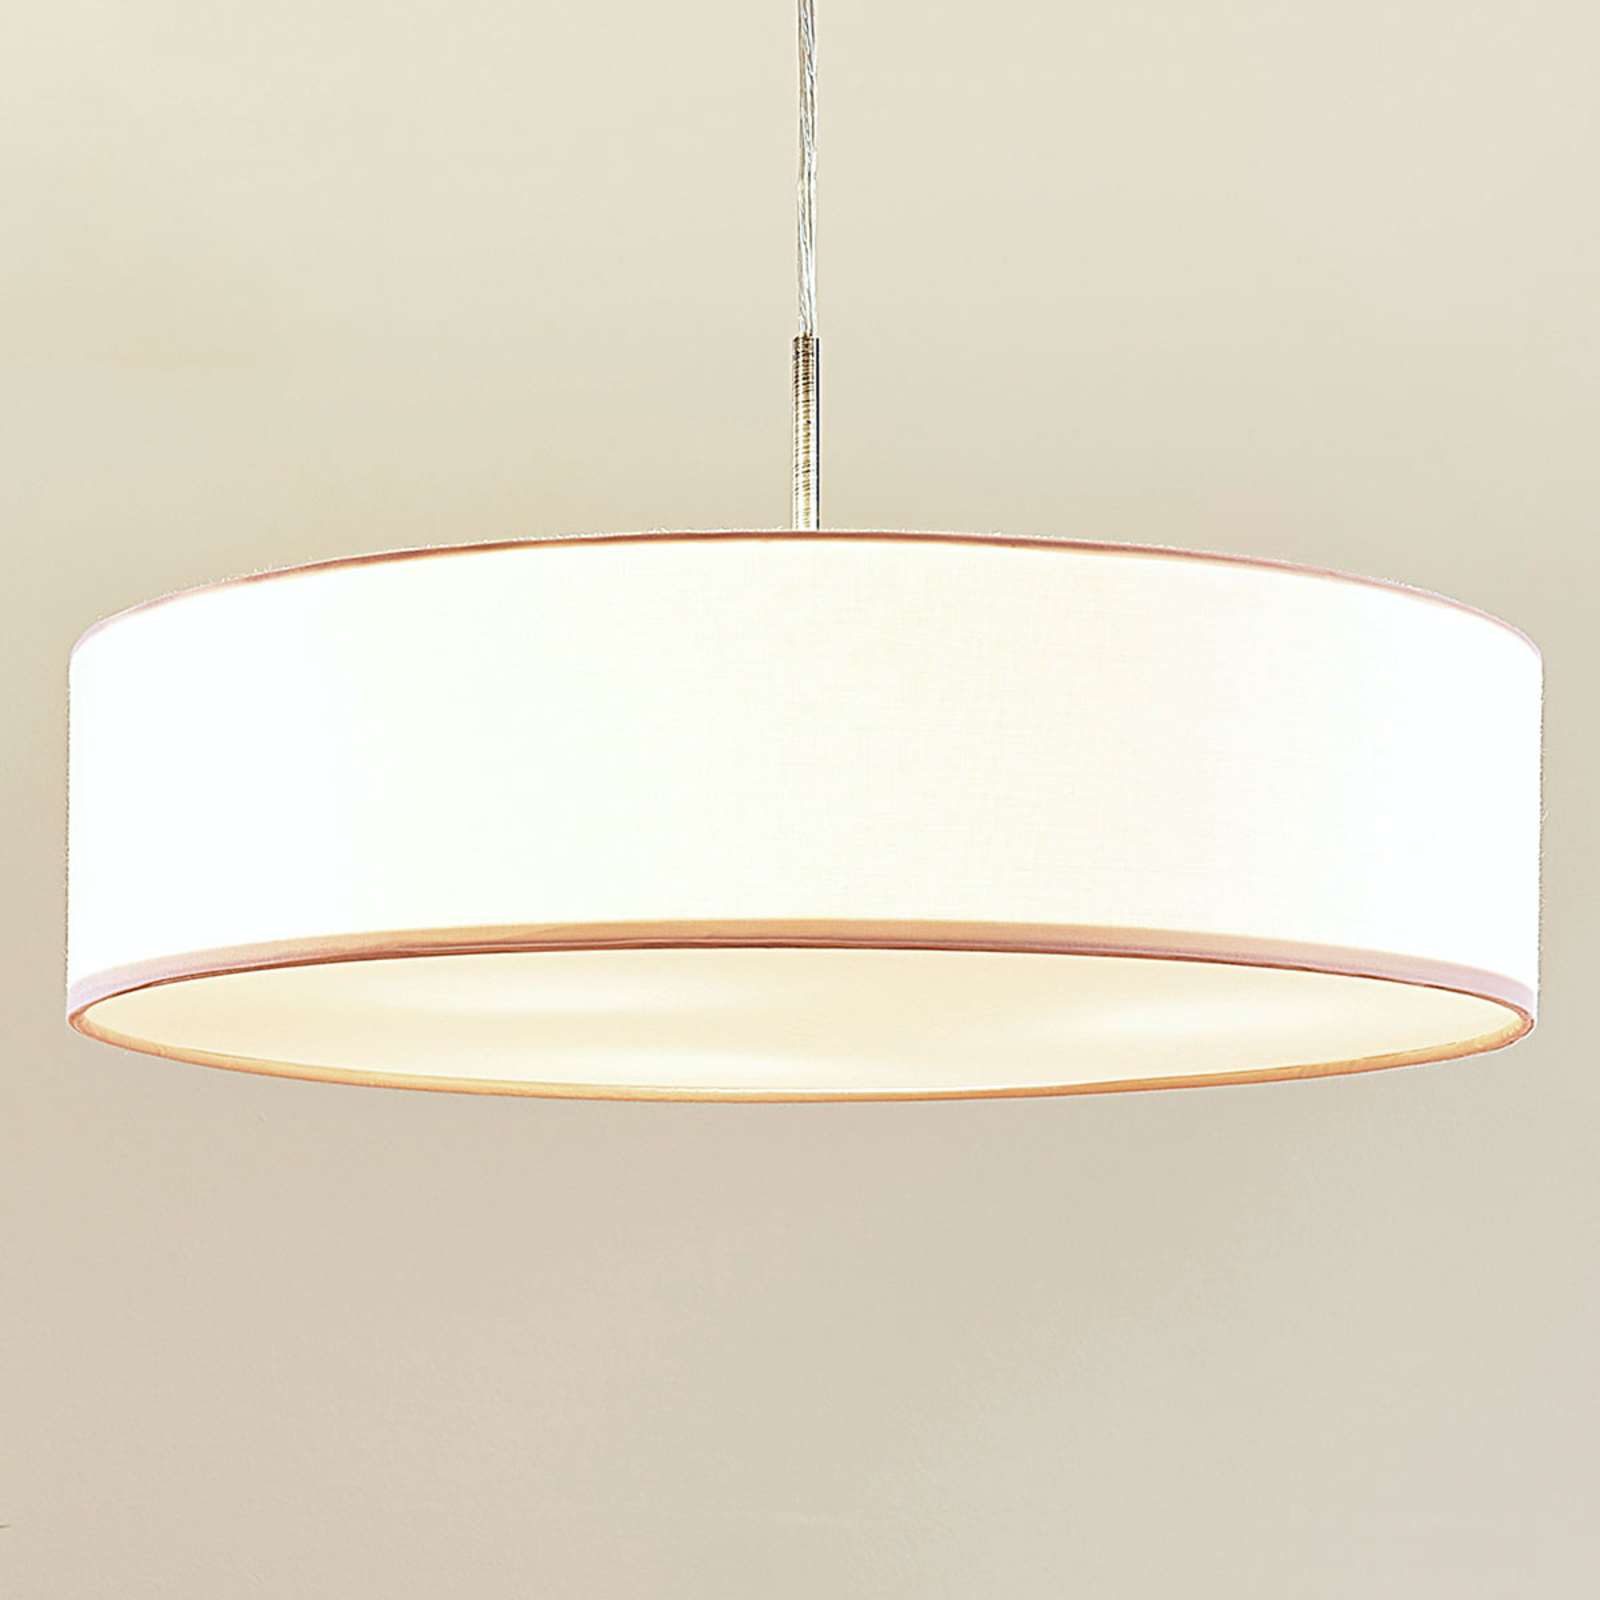 Sebatin - lampada a sospensione LED tessuto bianco